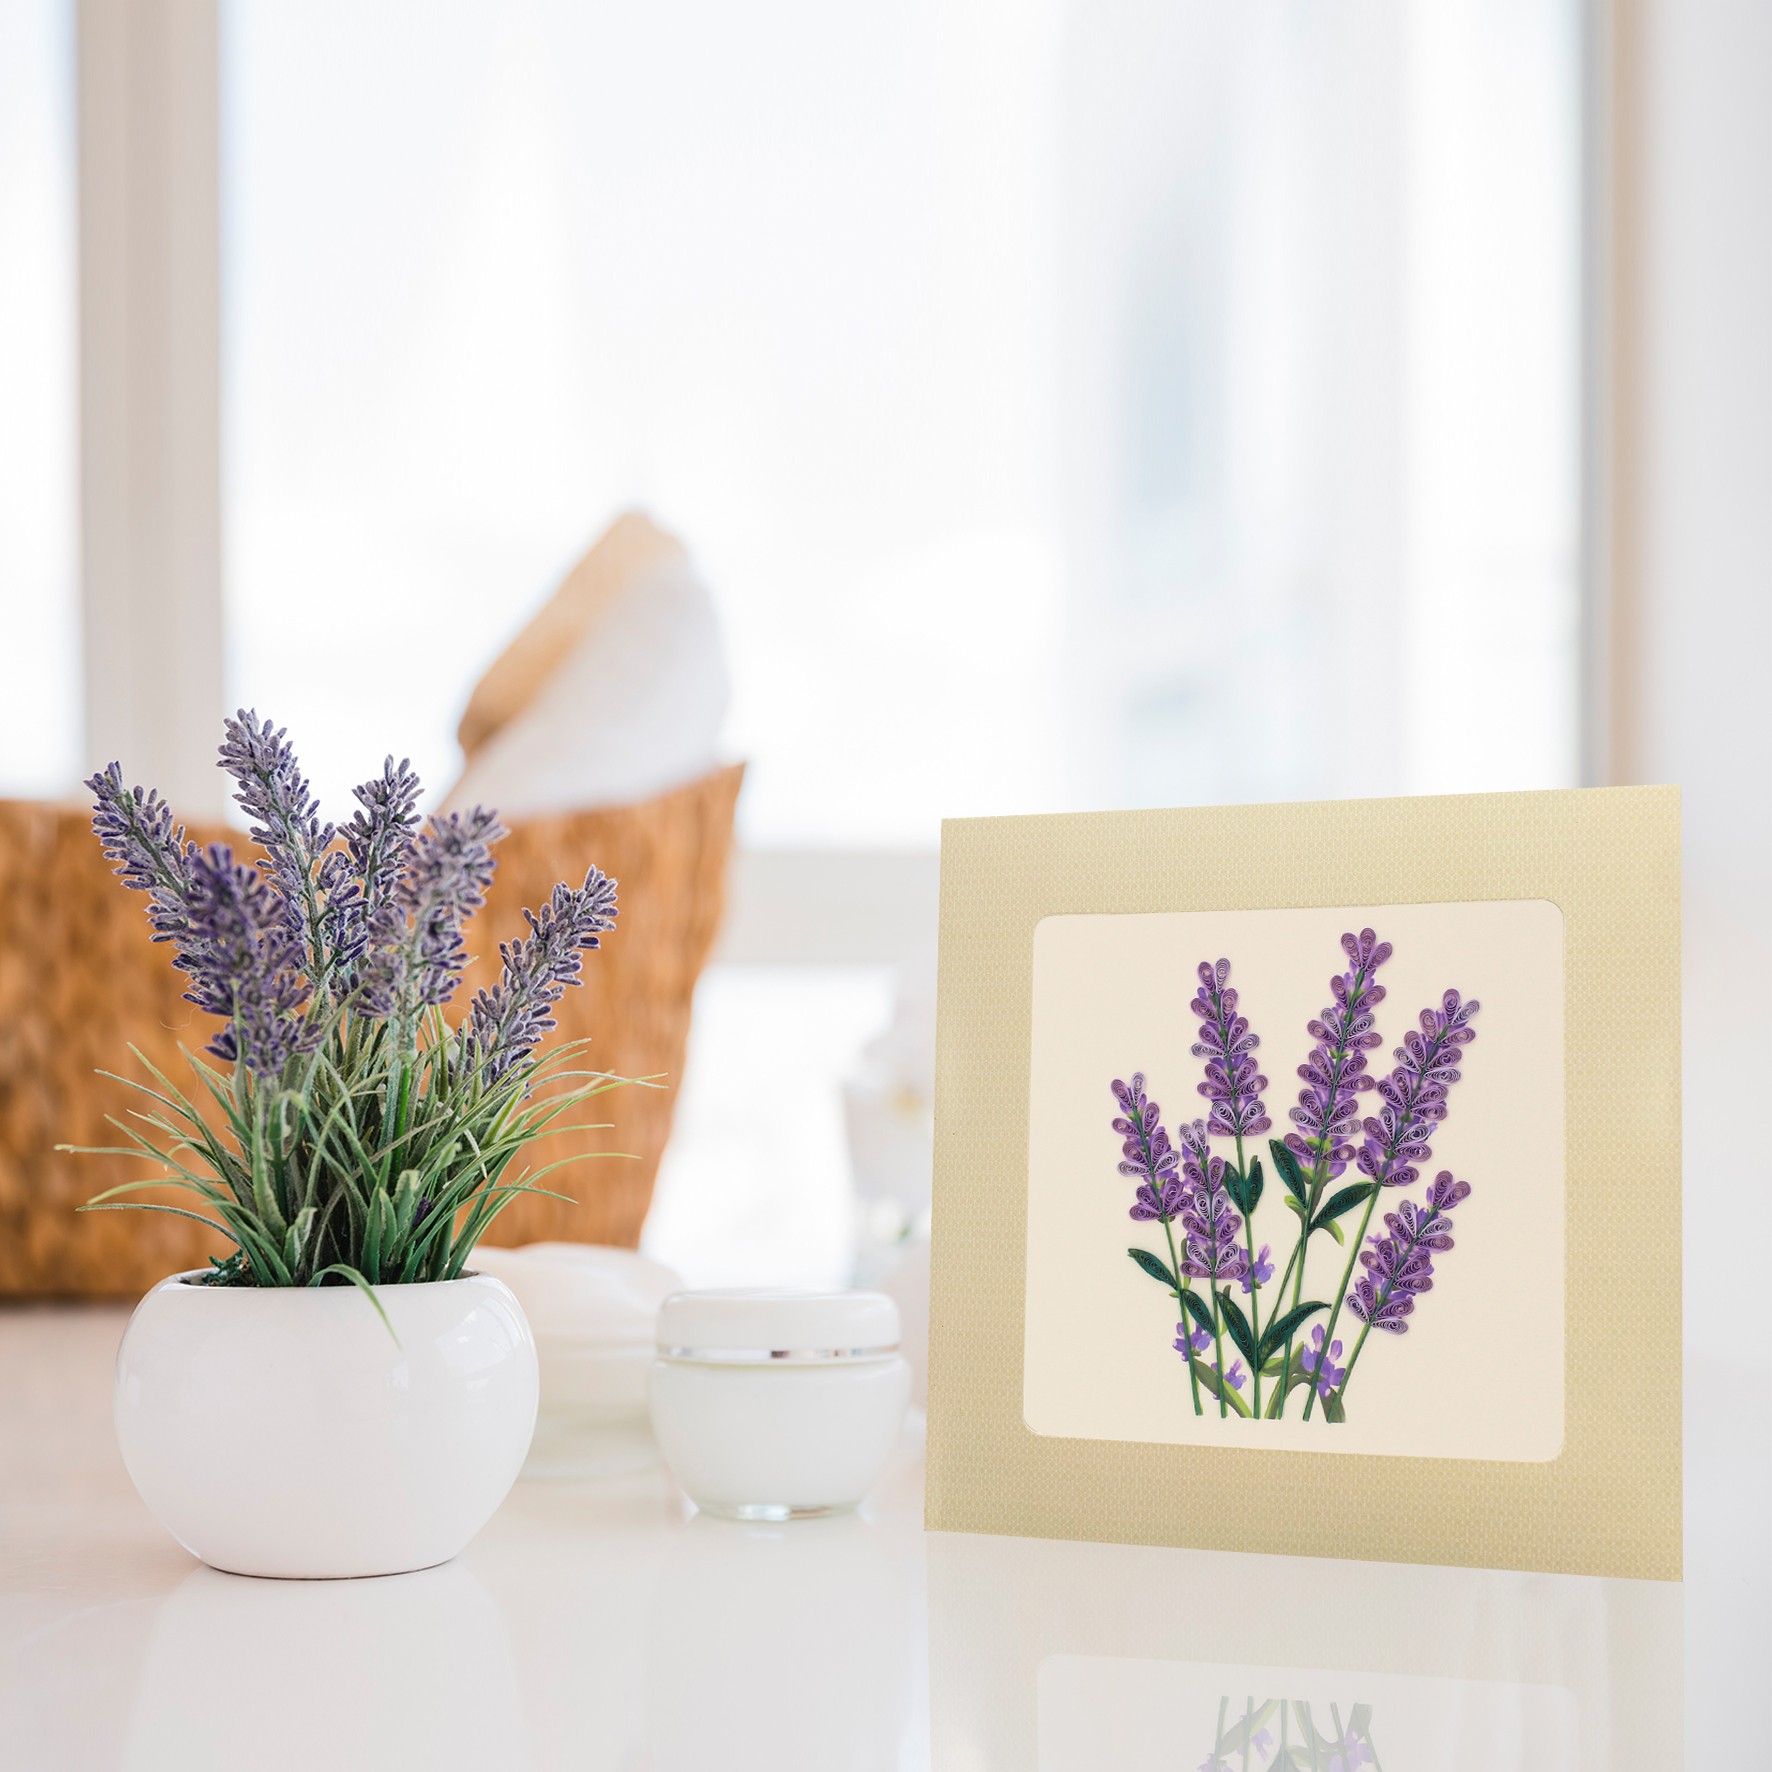 Thiệp Chúc Giấy Xoắn Thủ Công (Quilling Card) Hoa Lavender - Tặng Kèm Khung Giấy Để Bàn